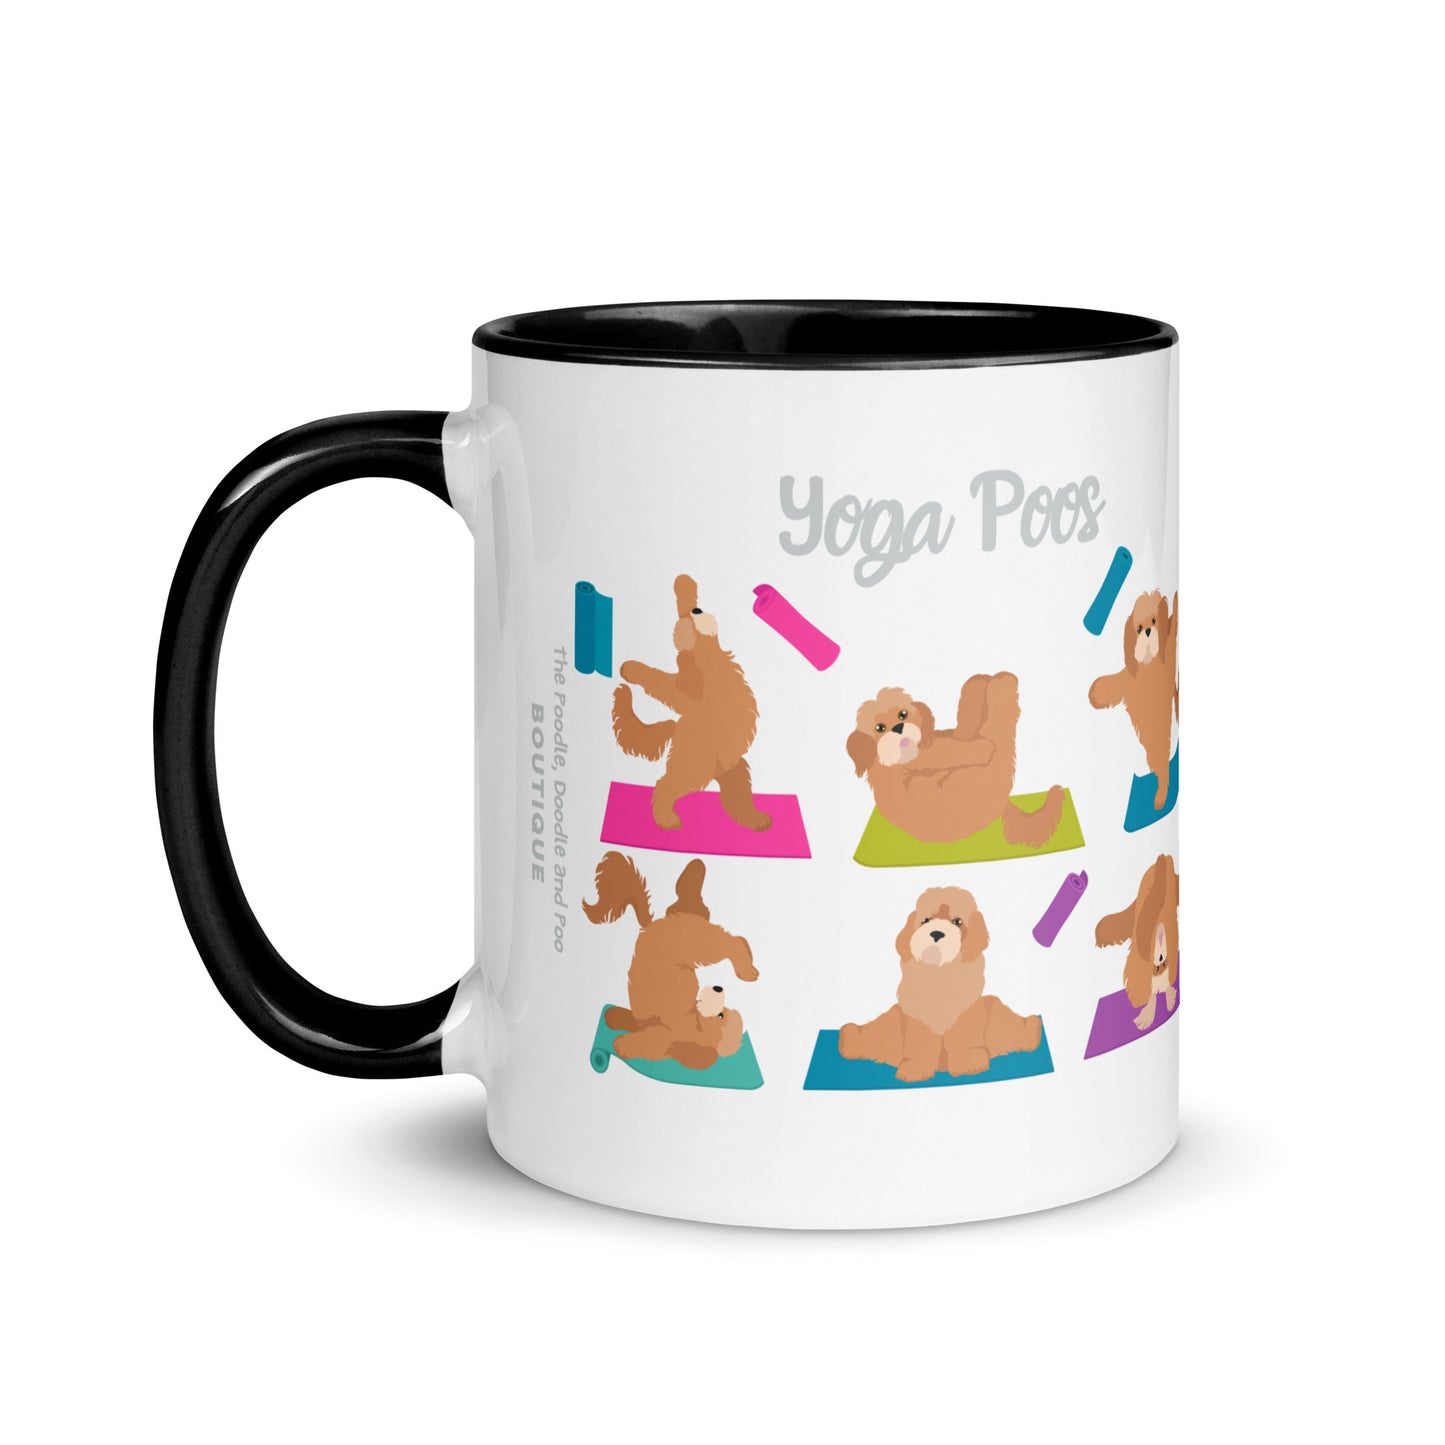 "Yoga Poos" mug